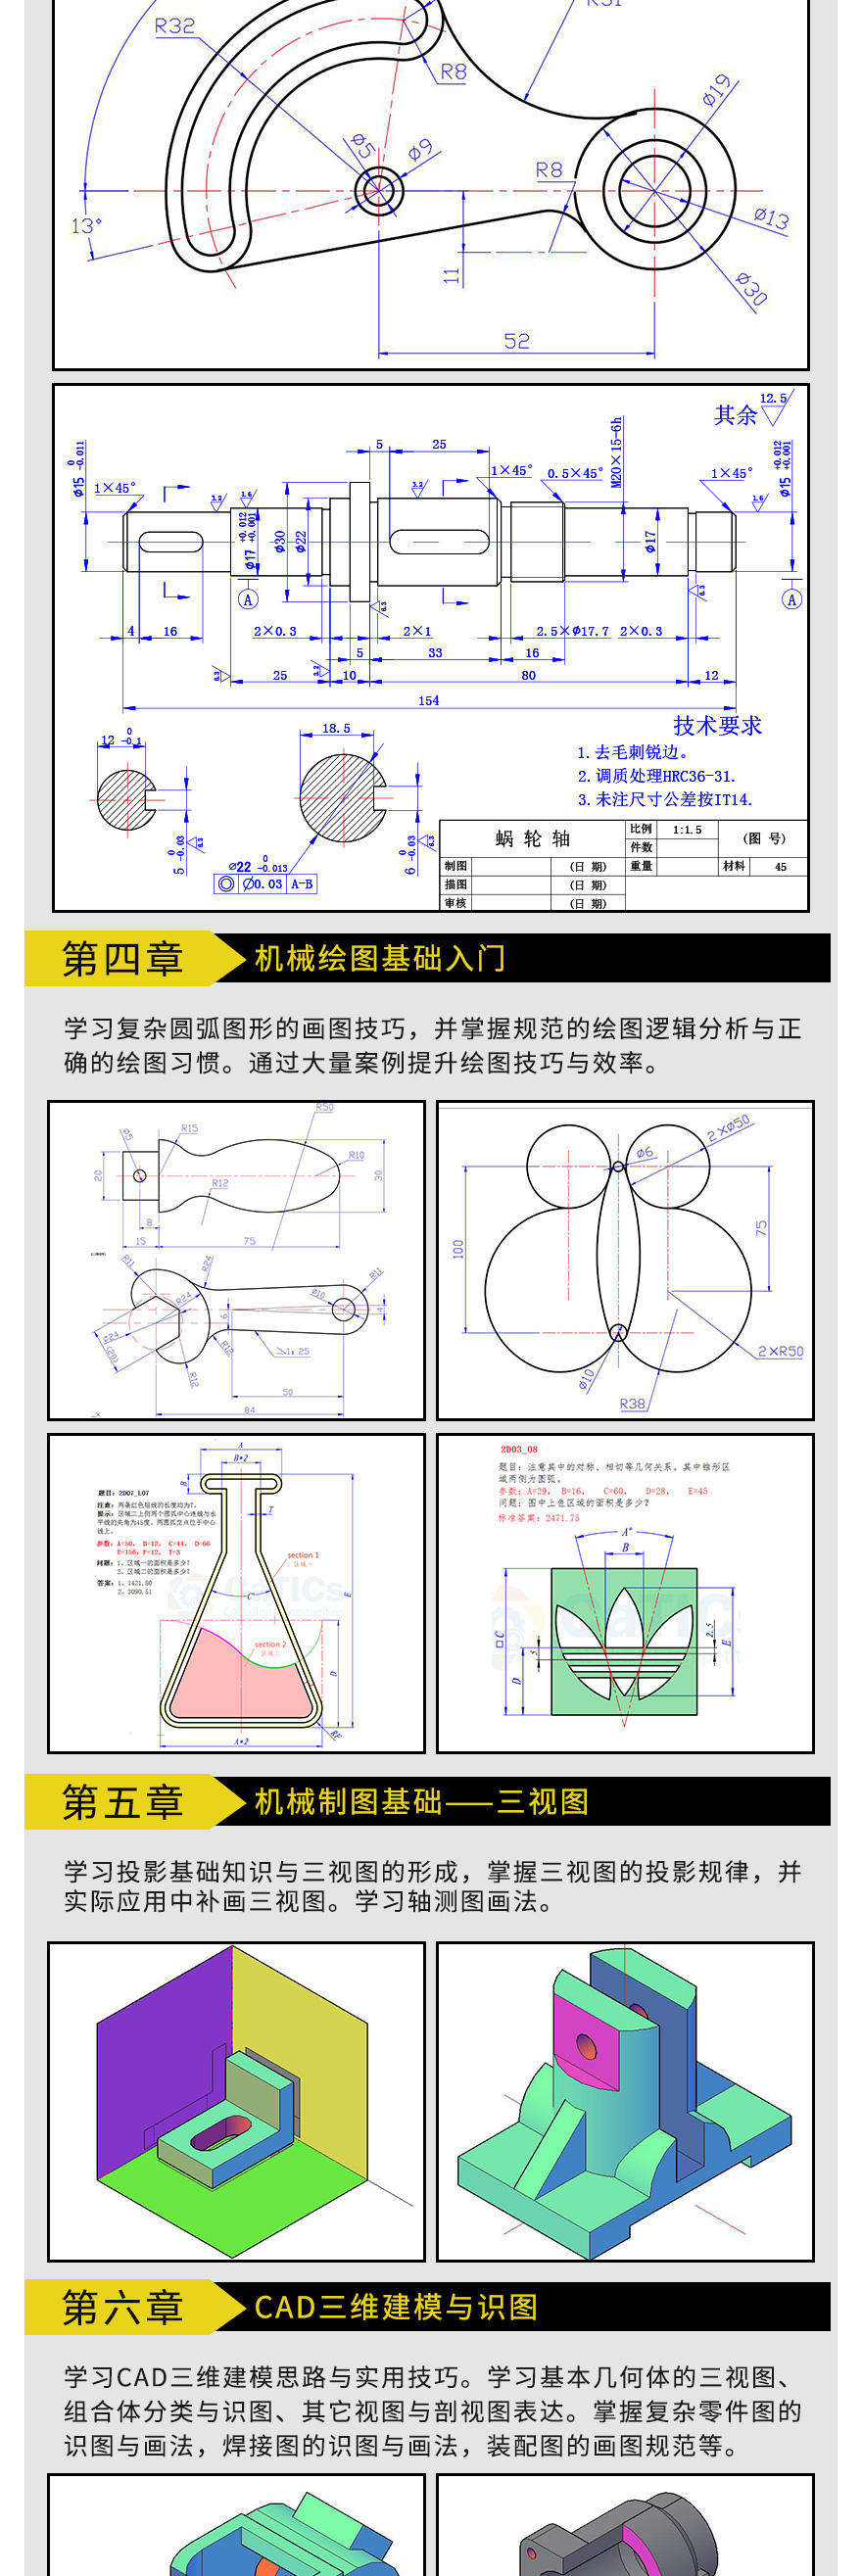 CAD机械制图高级课程-切片2_03.jpg